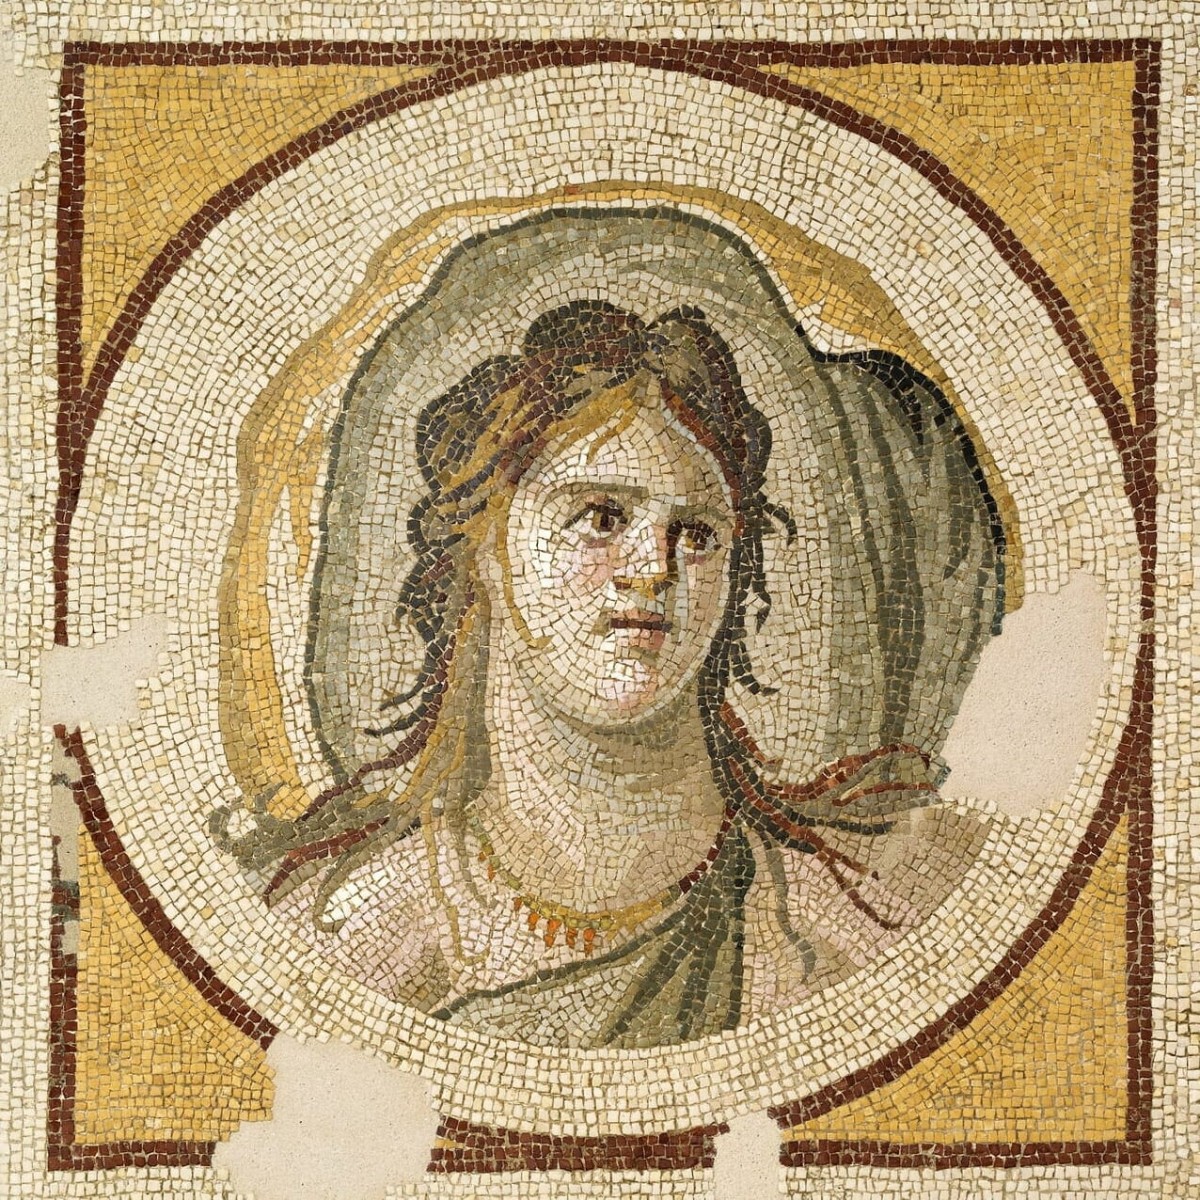 Okeanid Kadın Mozaiği, Ulusal Müze, Fransa